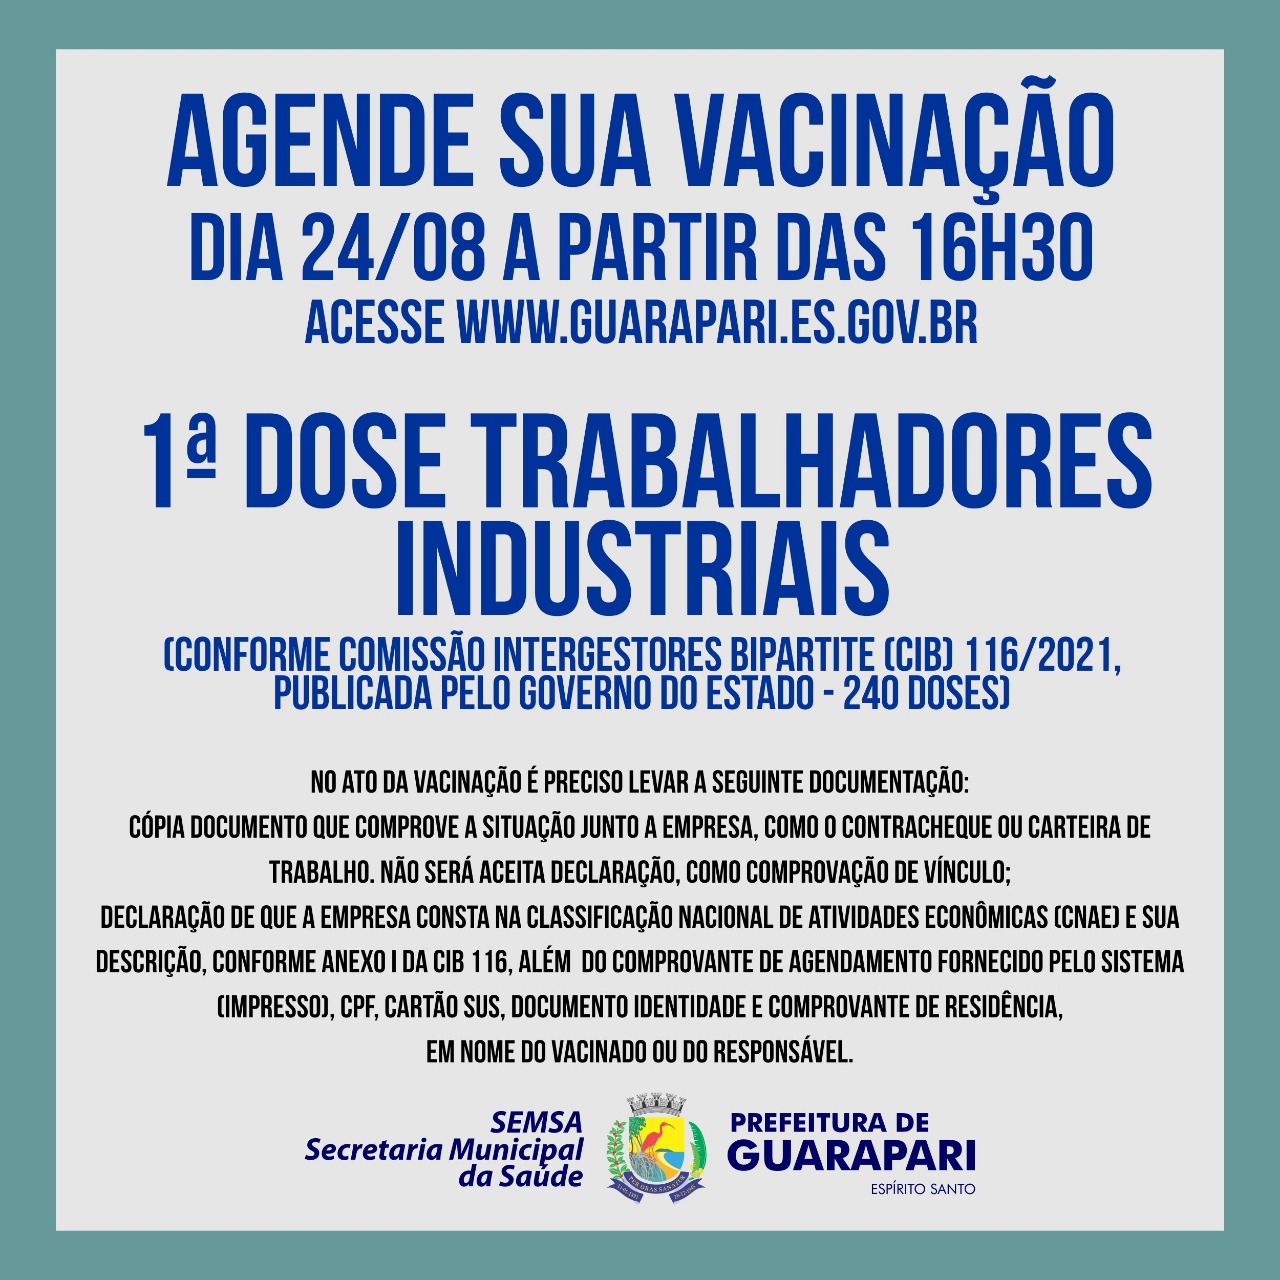 Guarapari abre novo agendamento para vacinação dos industriais nesta terça